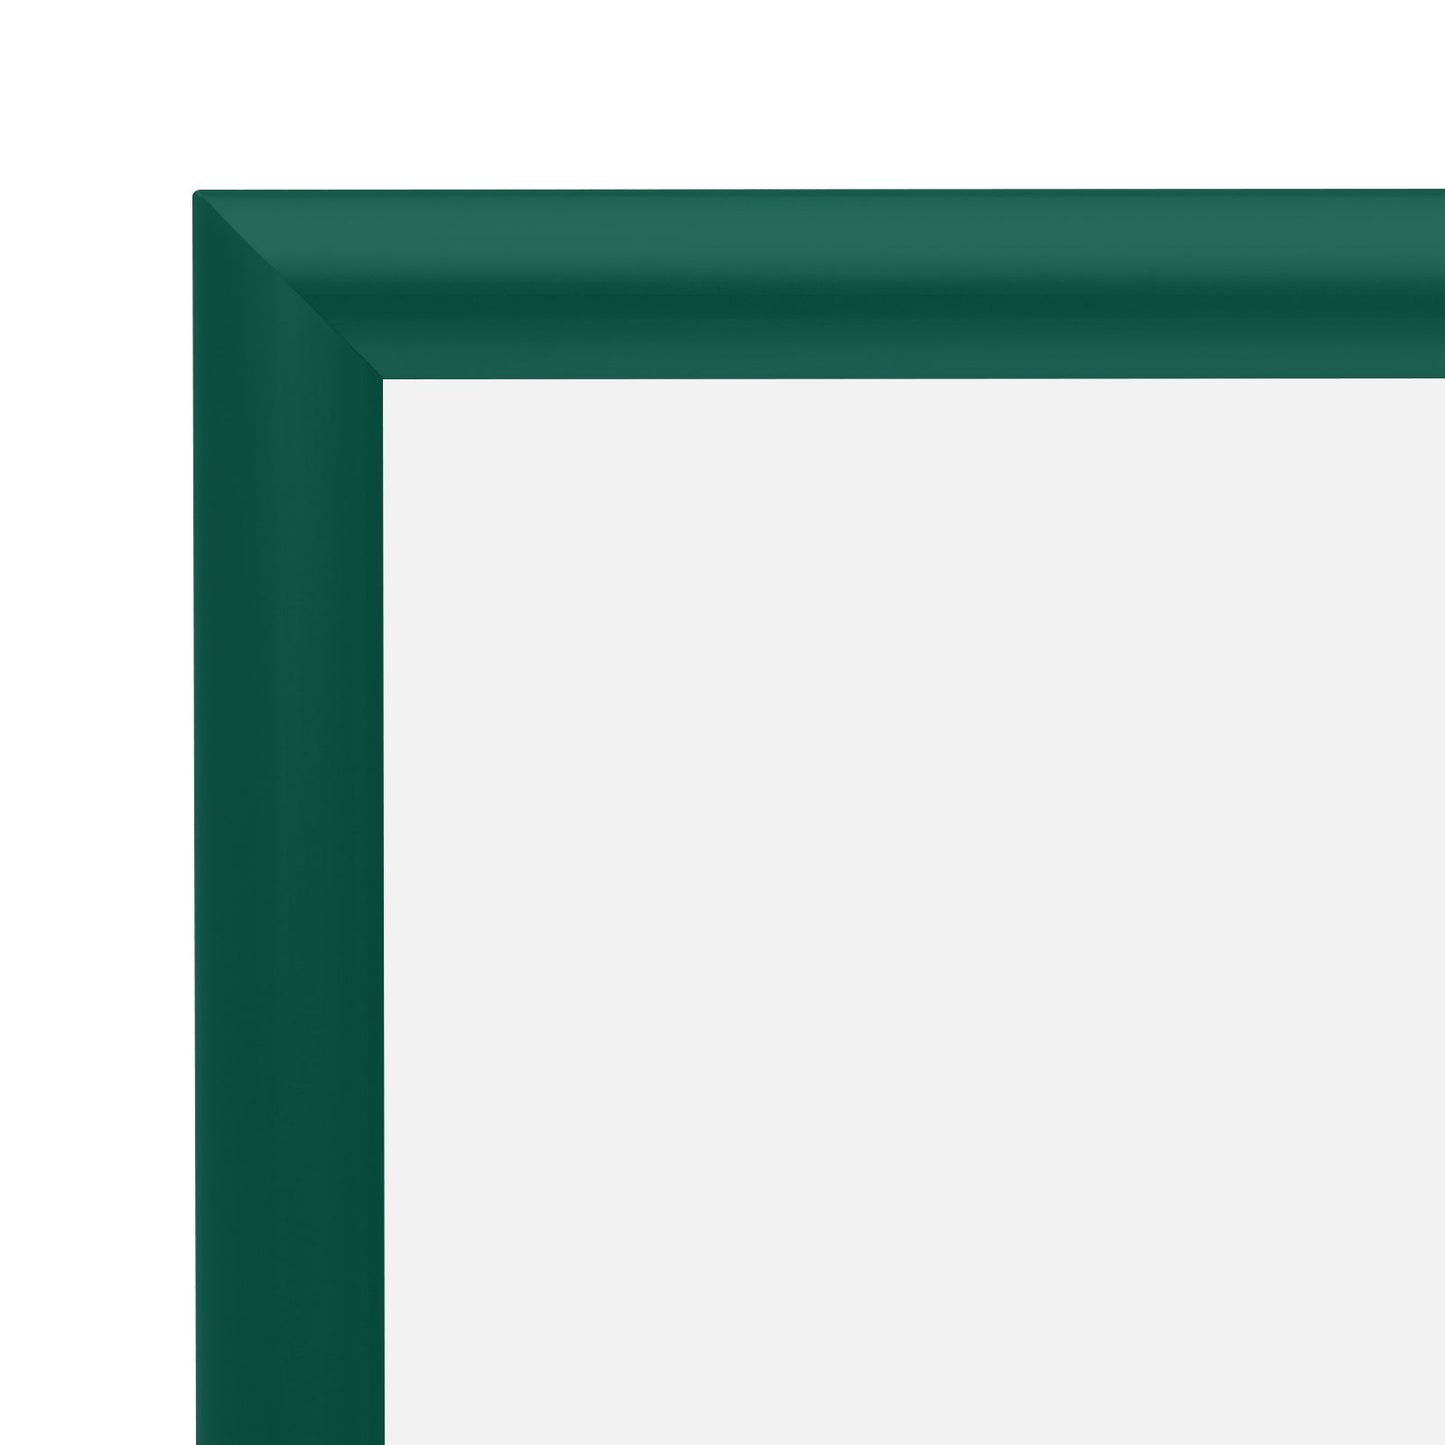 11x17 Green SnapeZo® Snap Frame - 1" Profile